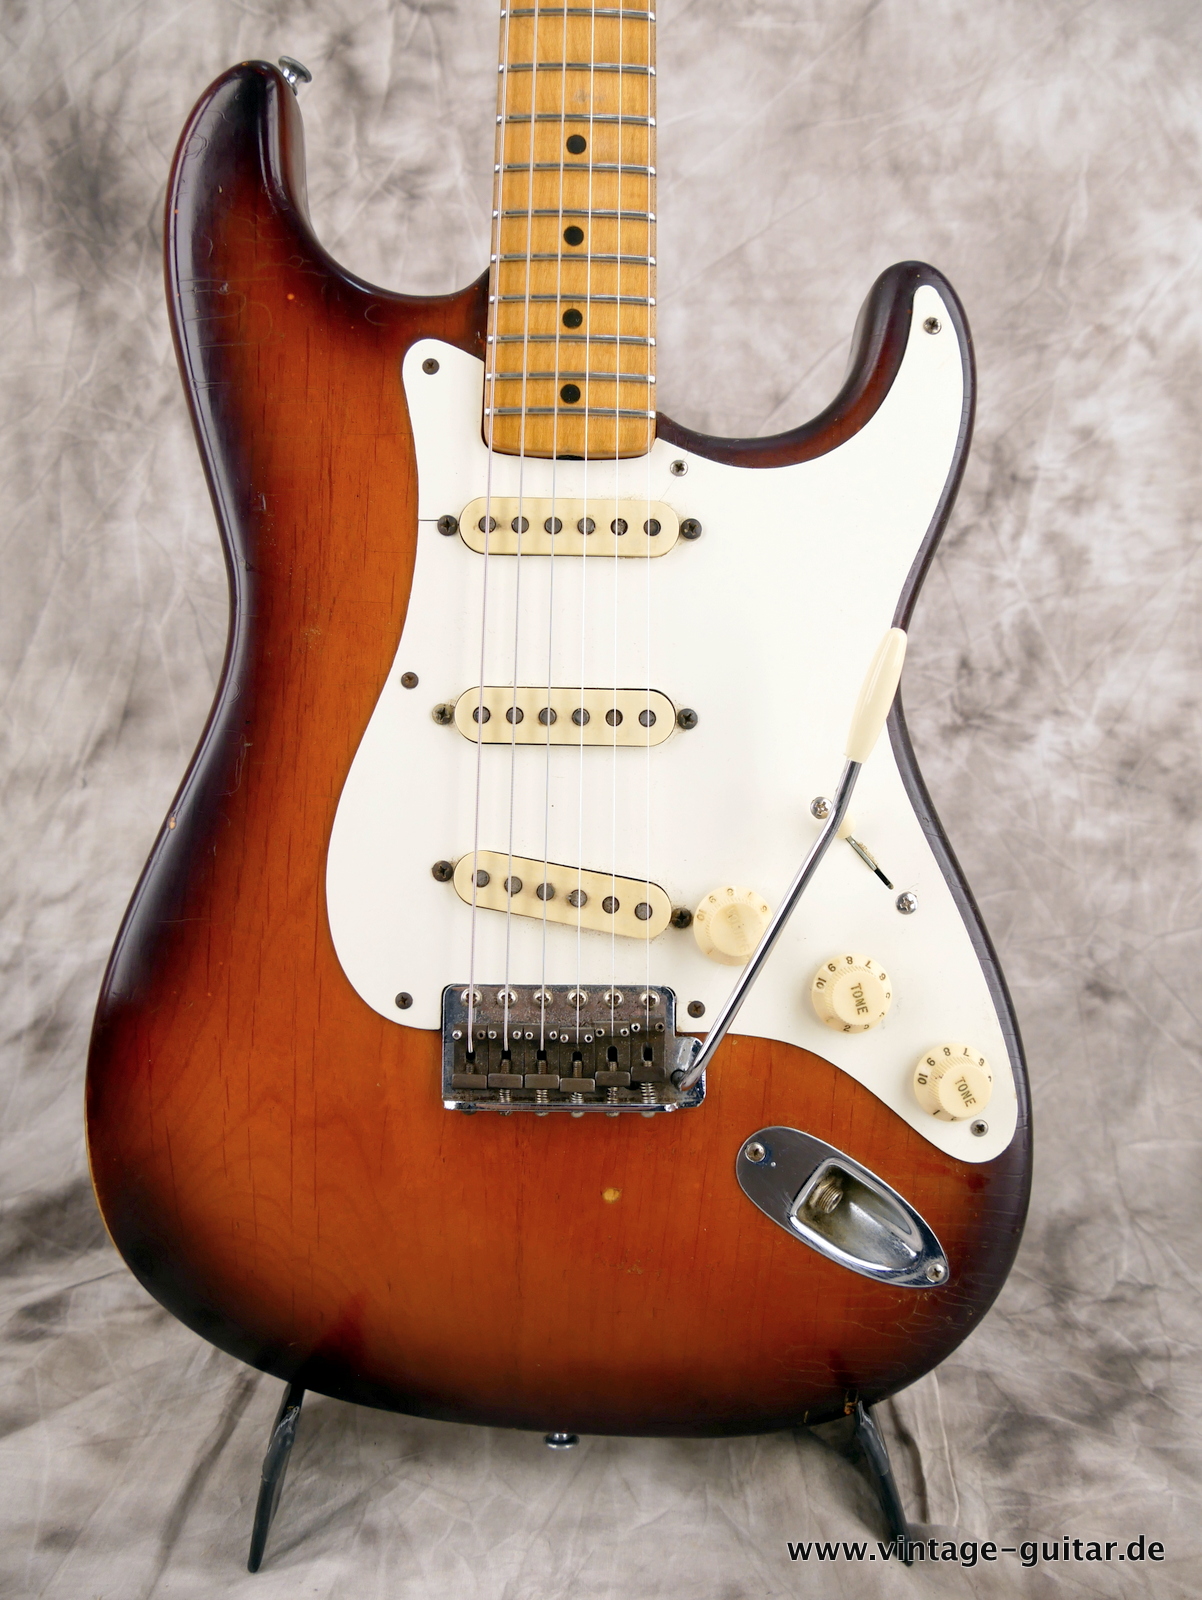 img/vintage/5397/Fender-Stratocaster-1958-sunburst-003.JPG